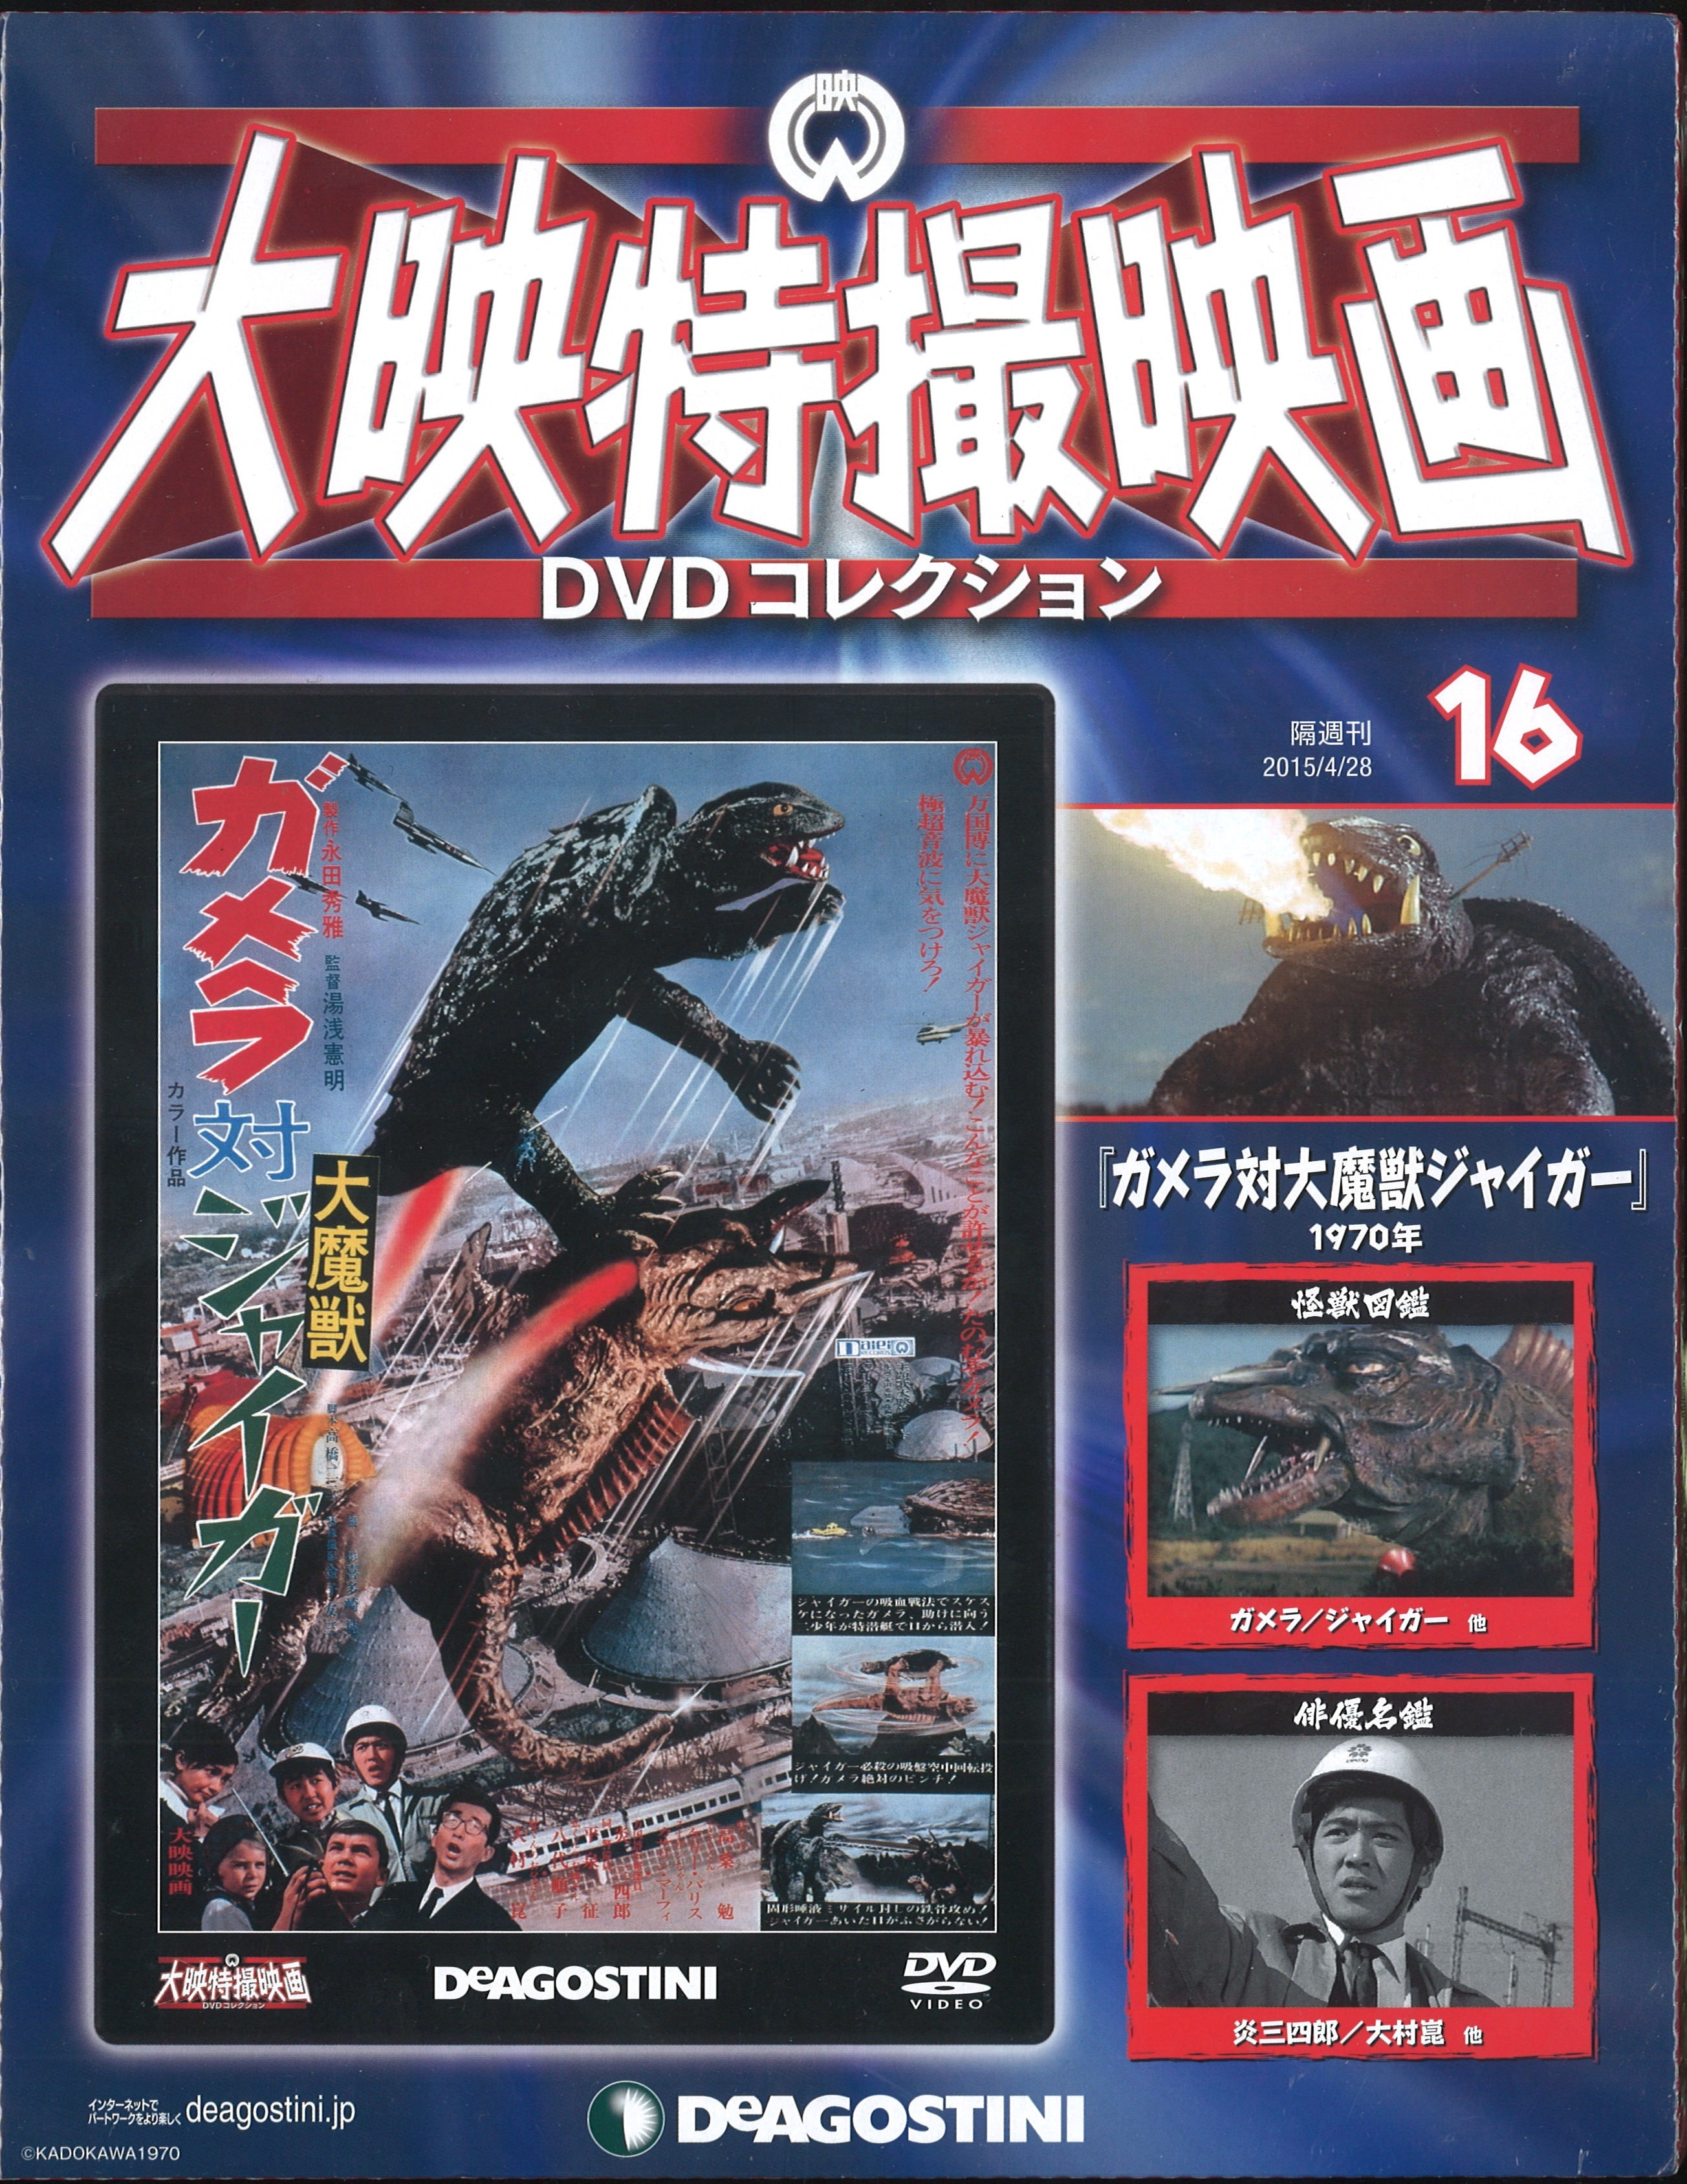 日本謹製大映特撮映画 DVDコレクション 16作品 デアゴスティーニ W5Kng